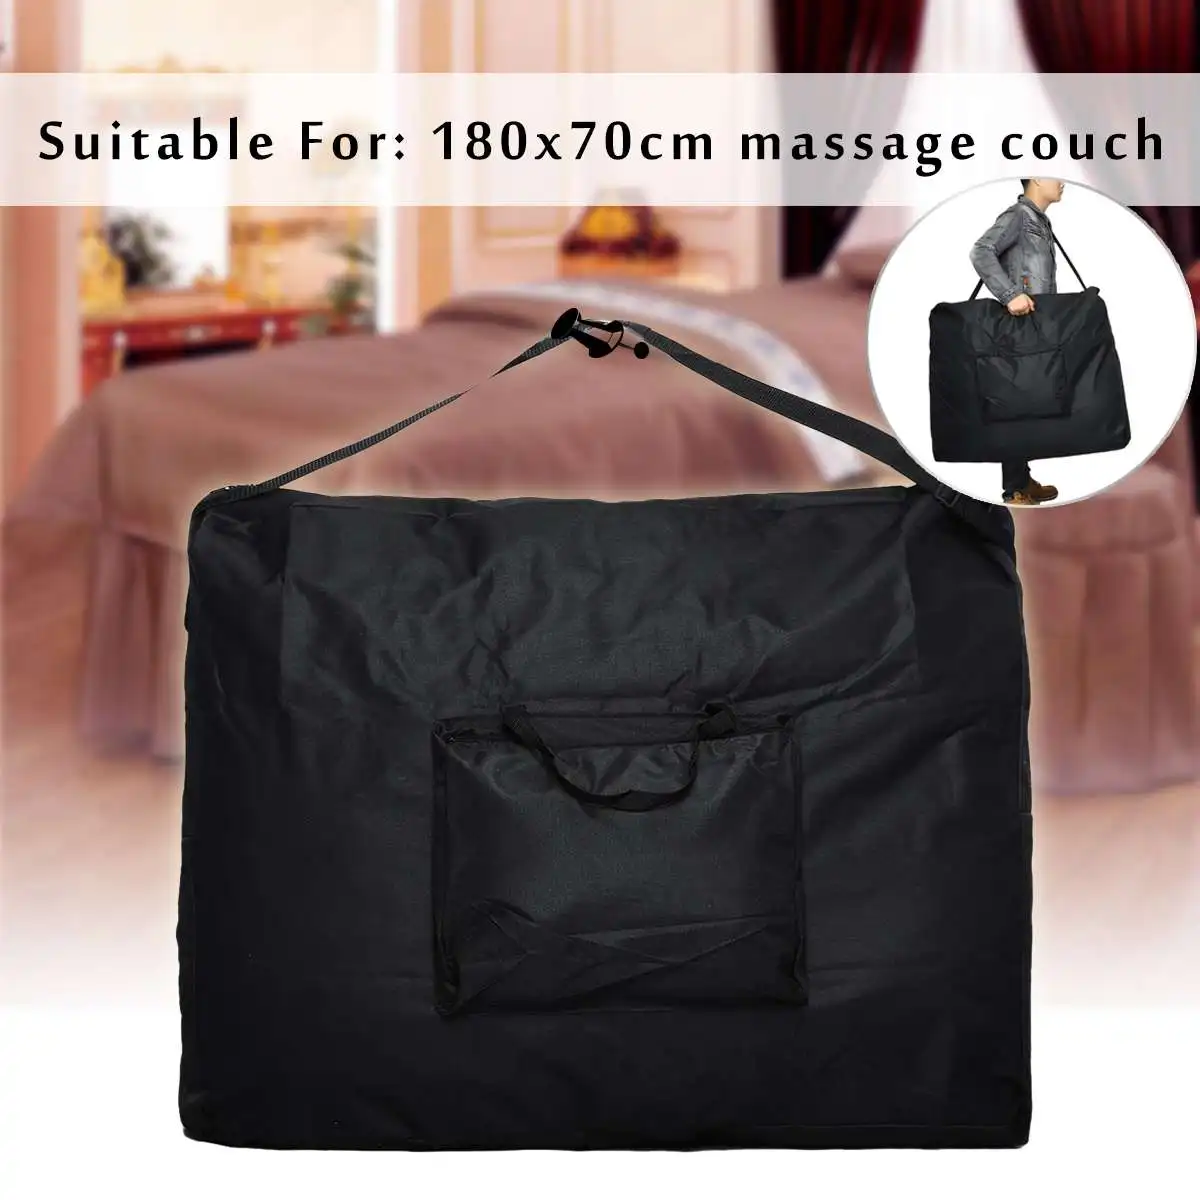 94x73x18 см складная сумка для массажной кровати прочная ткань Оксфорд водонепроницаемый рюкзак для хранения на 180x70 см кровать для красоты от AliExpress WW